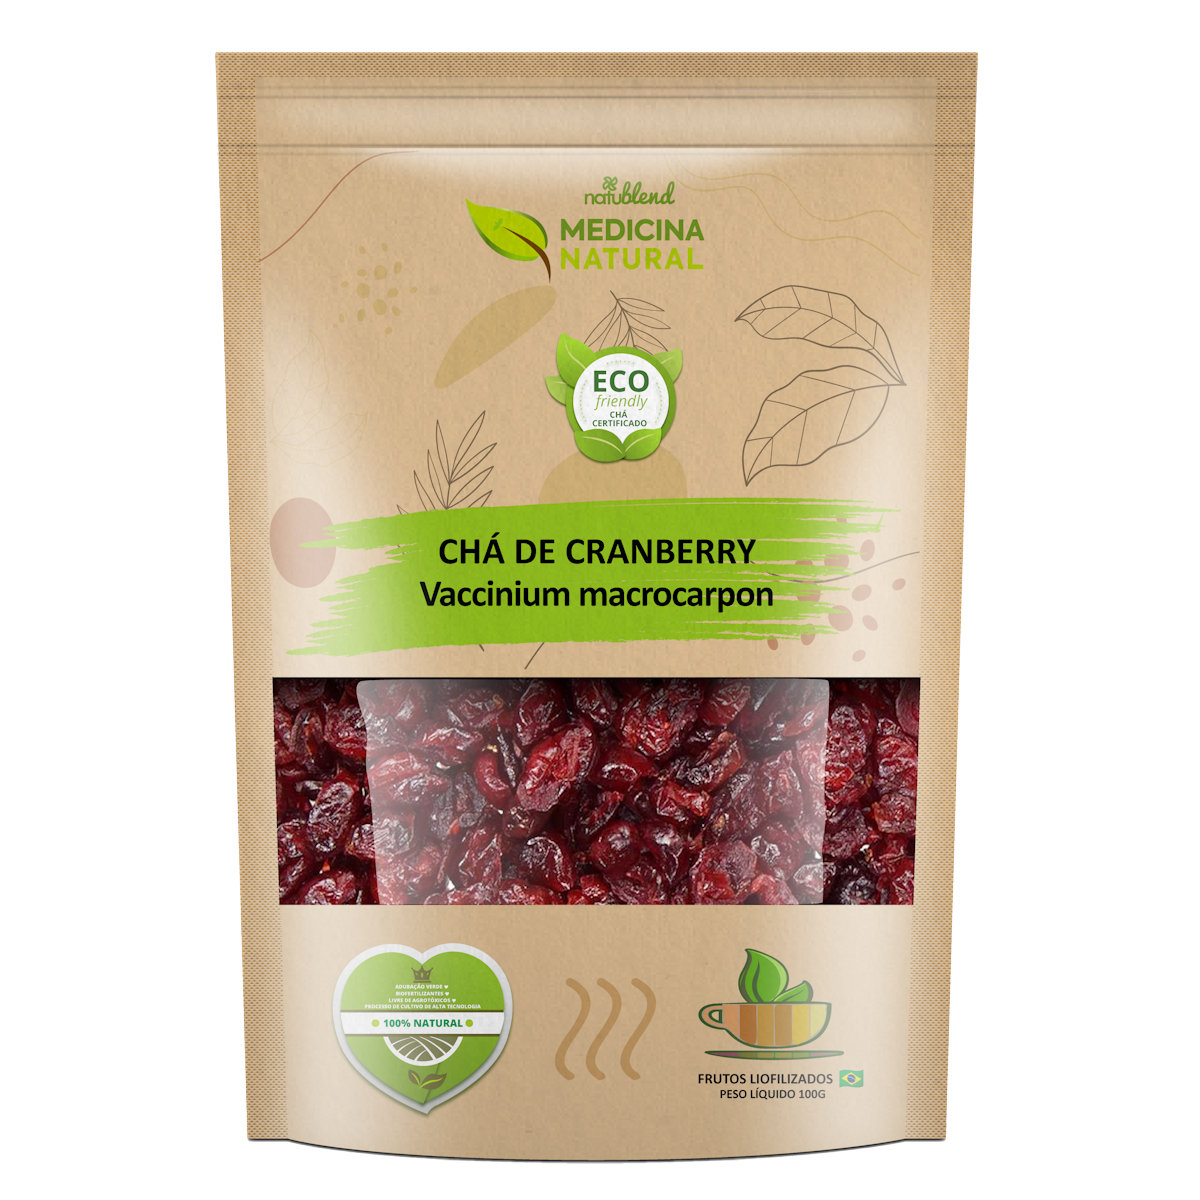 Chá de Cranberry Medicina Natural